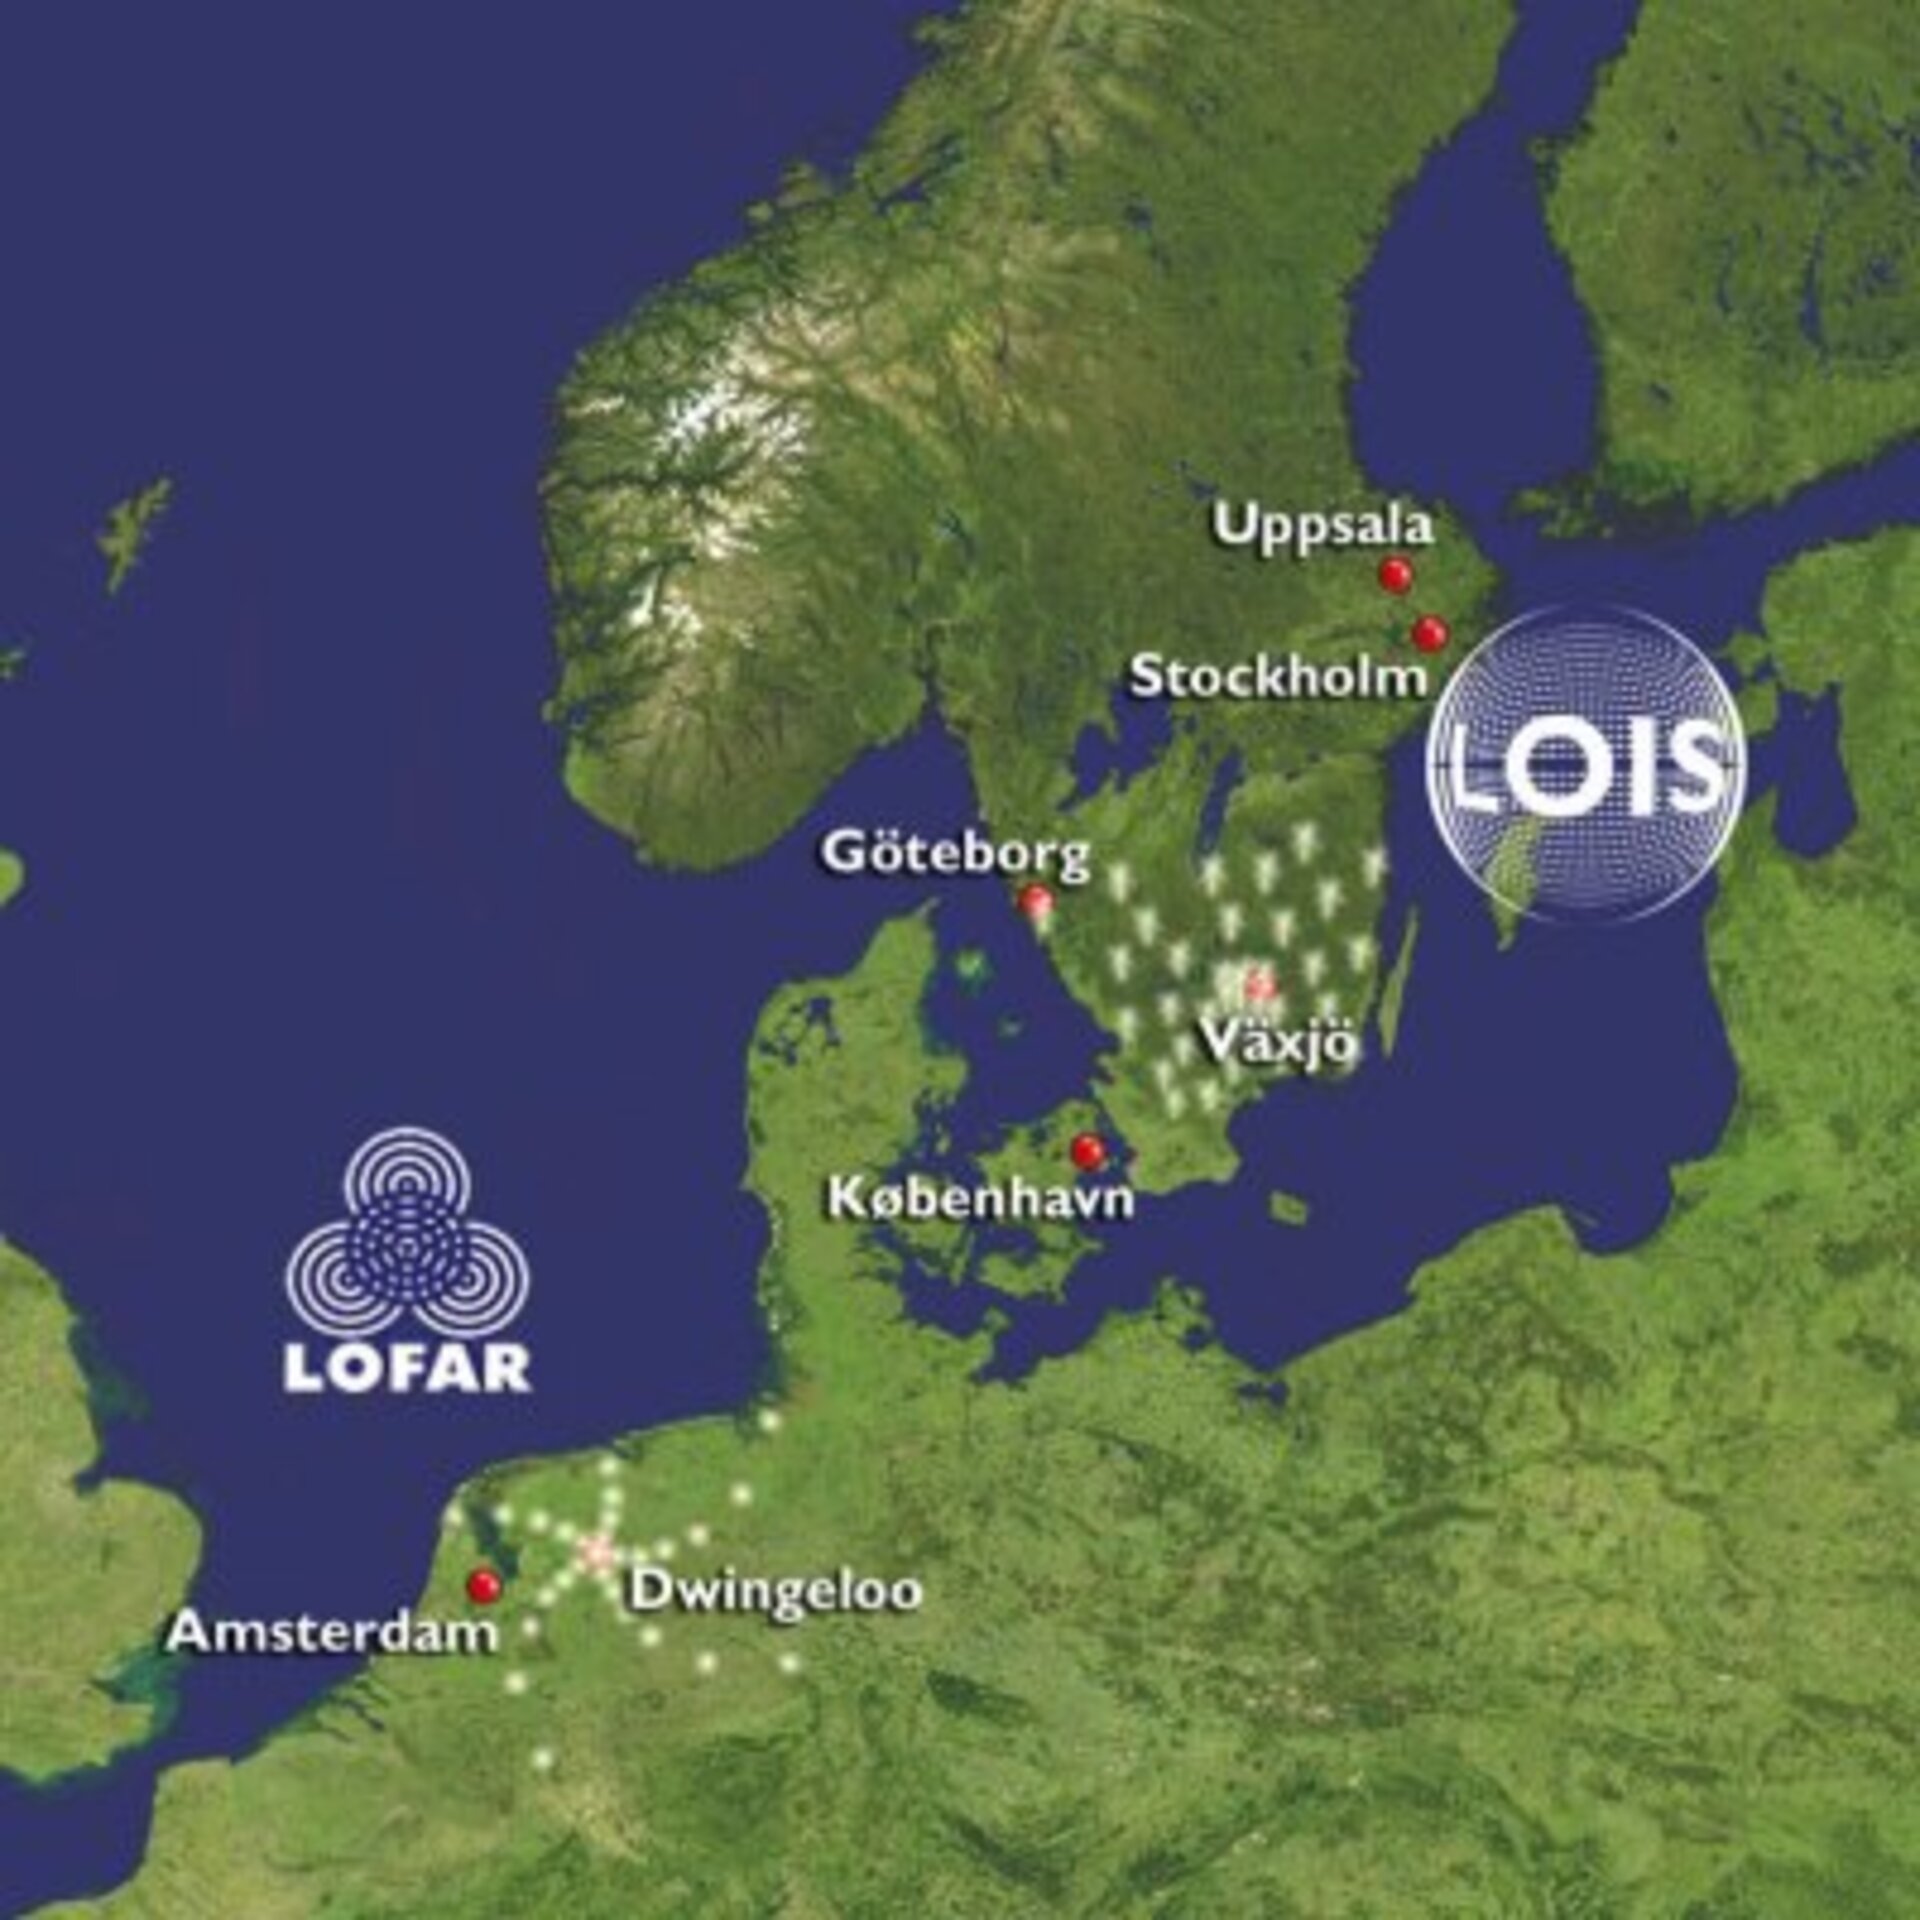 När de är färdigutbyggda kommer LOFAR och LOIS att täcka stora delar av Holland respektive södra Sverige